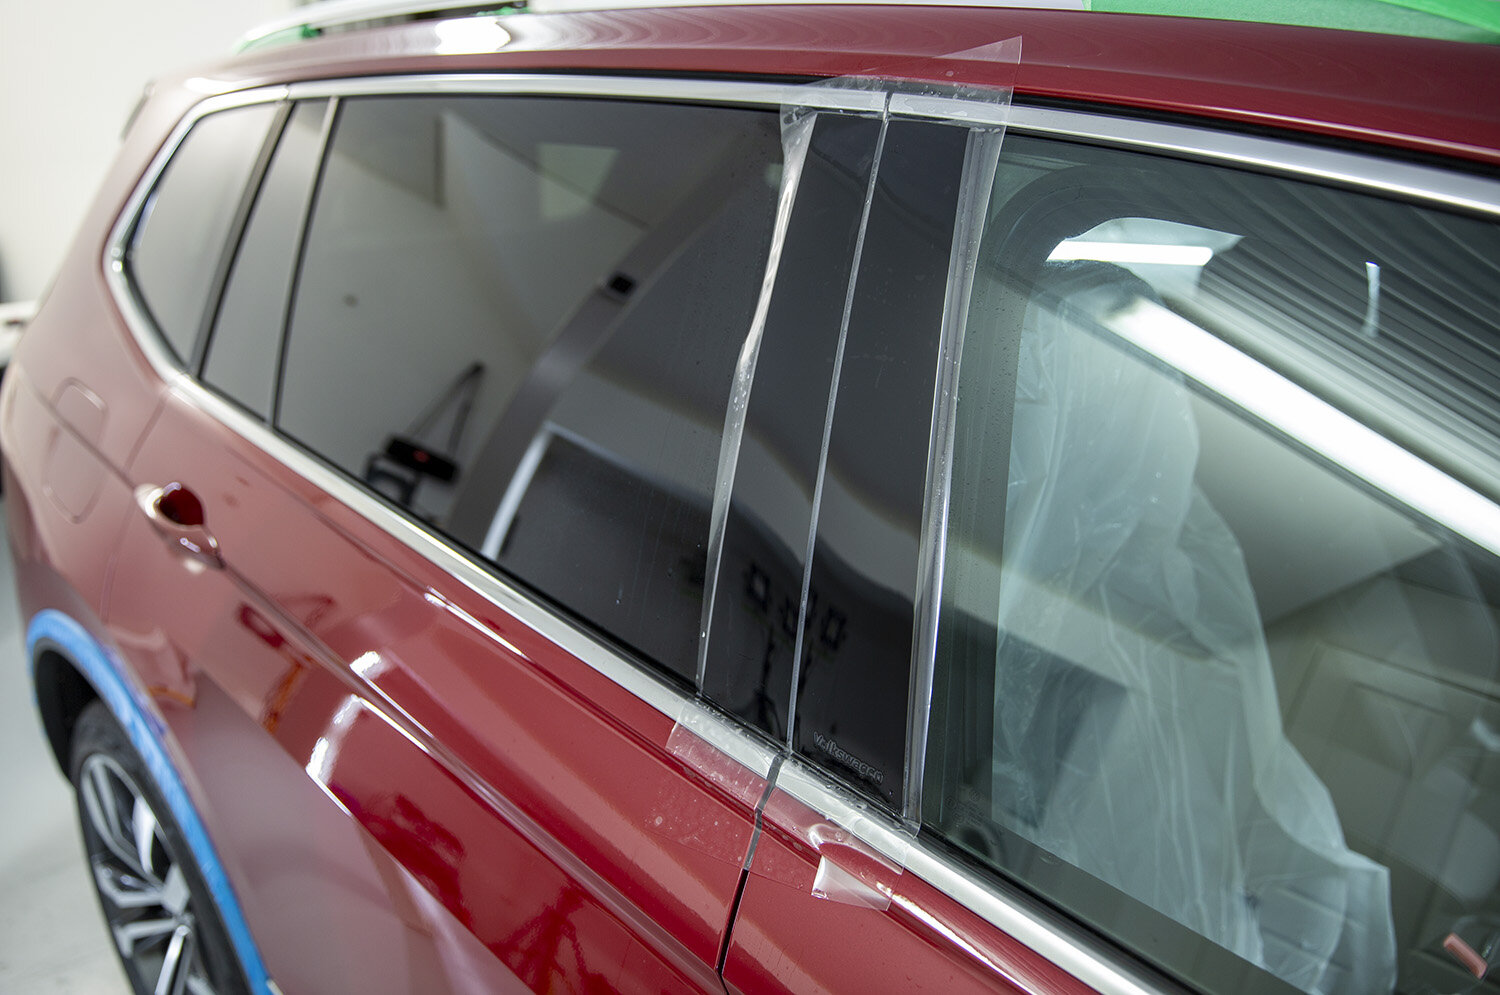 VW Tiguan Allspace Paint Protection Film Loading Area Car Foil